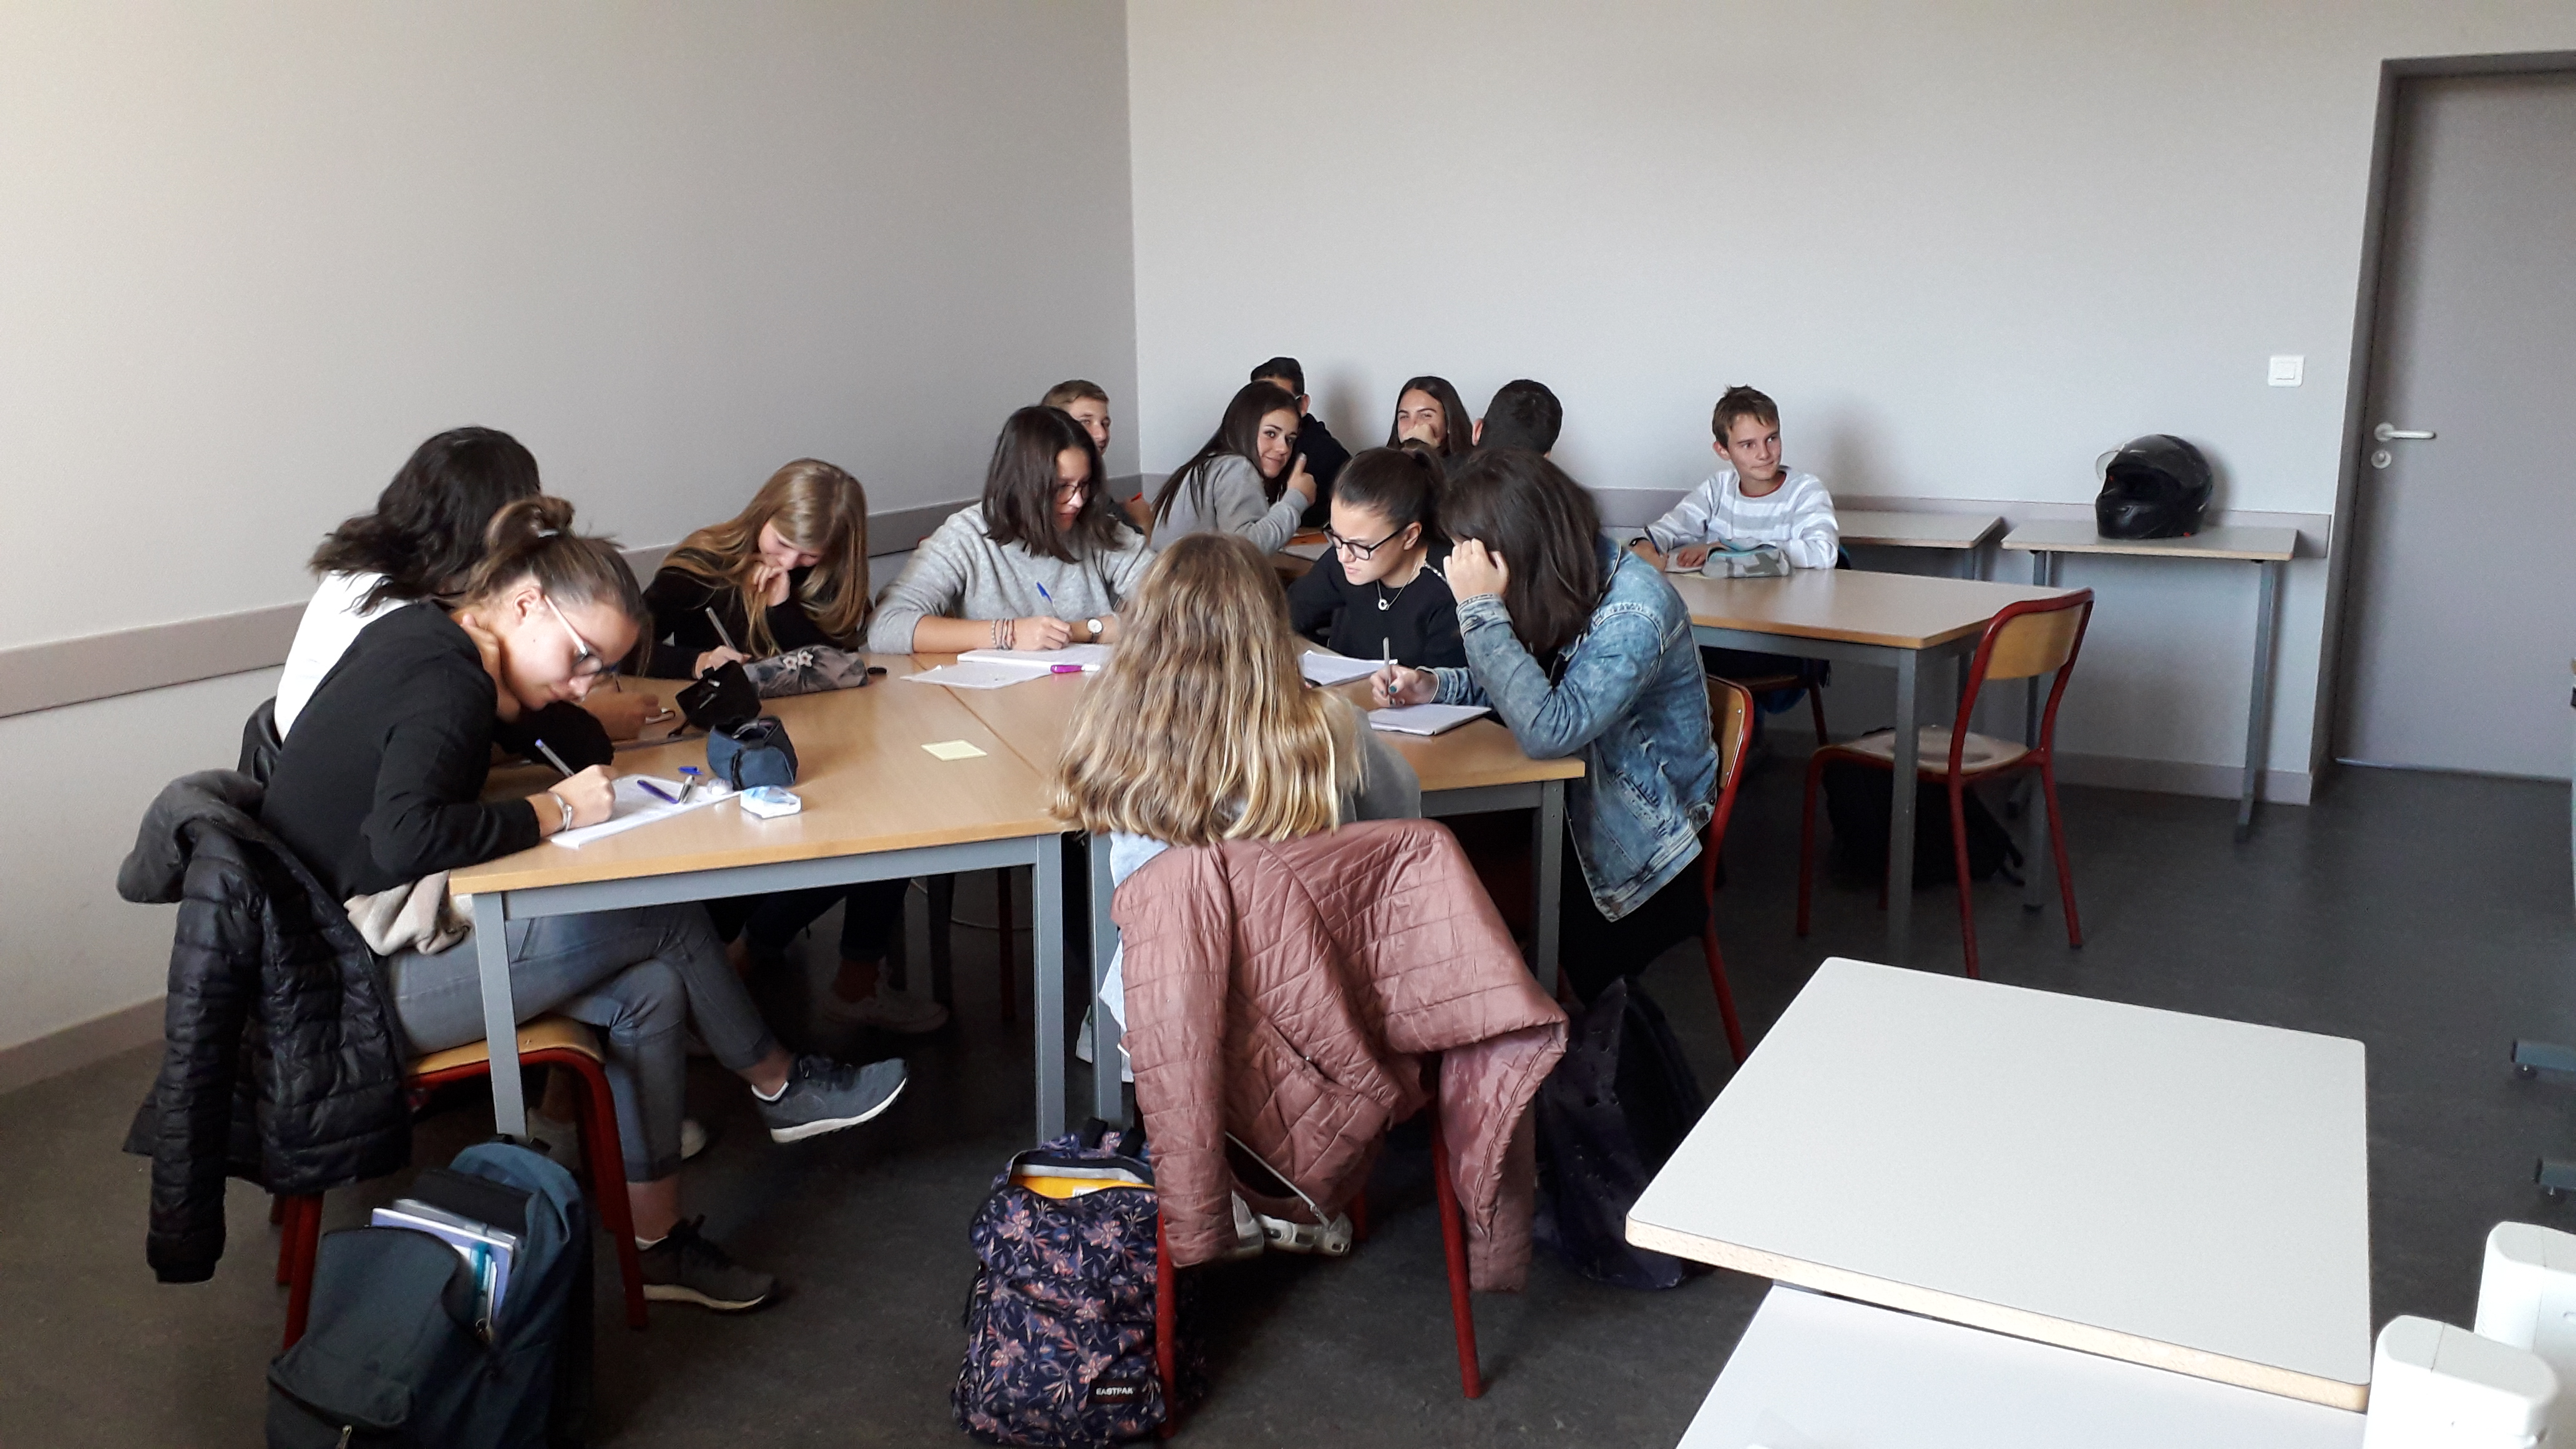 Vacances studieuses au lycée La Chartreuse